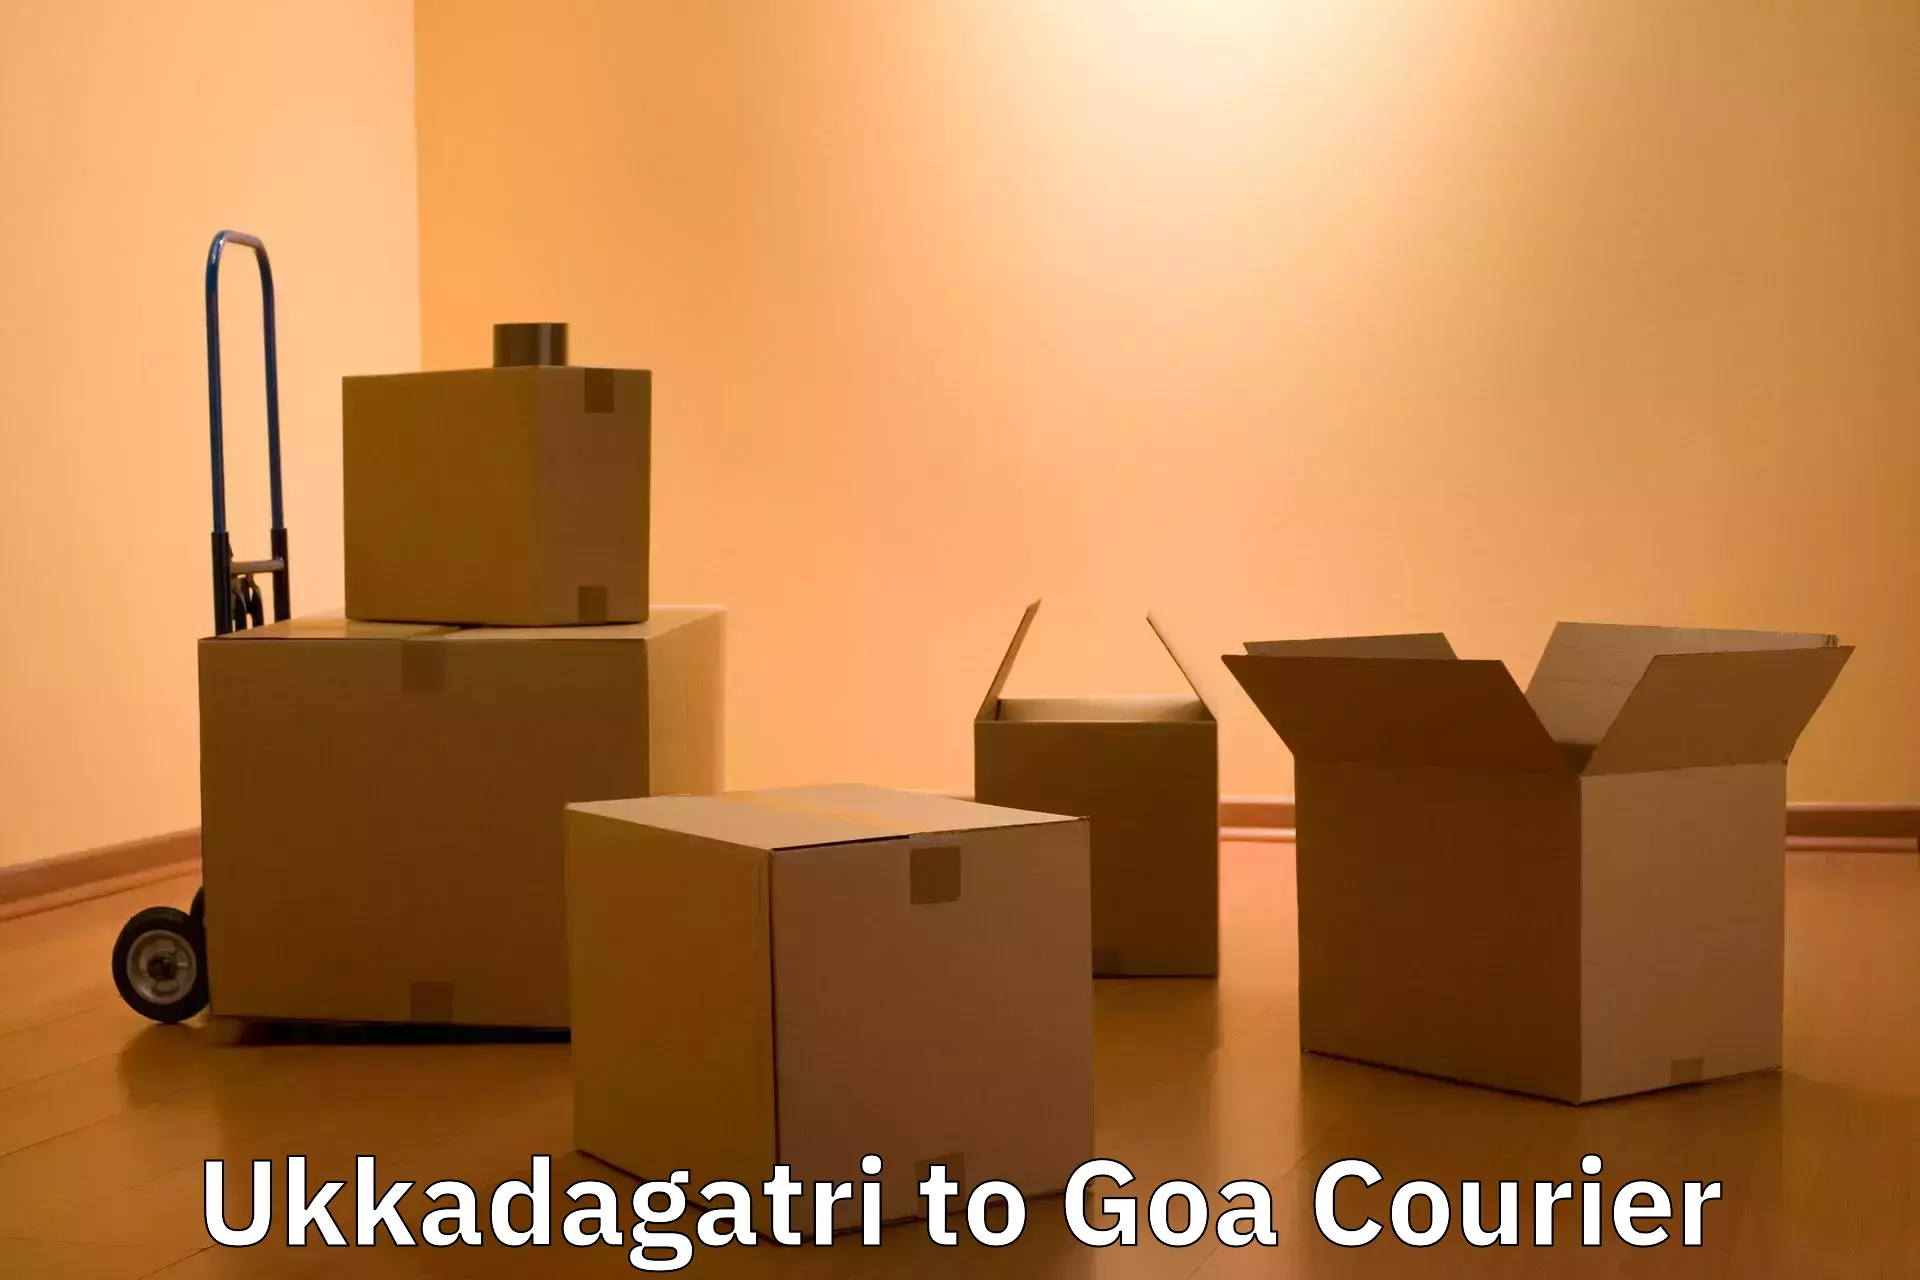 Luggage shipping consultation Ukkadagatri to Goa